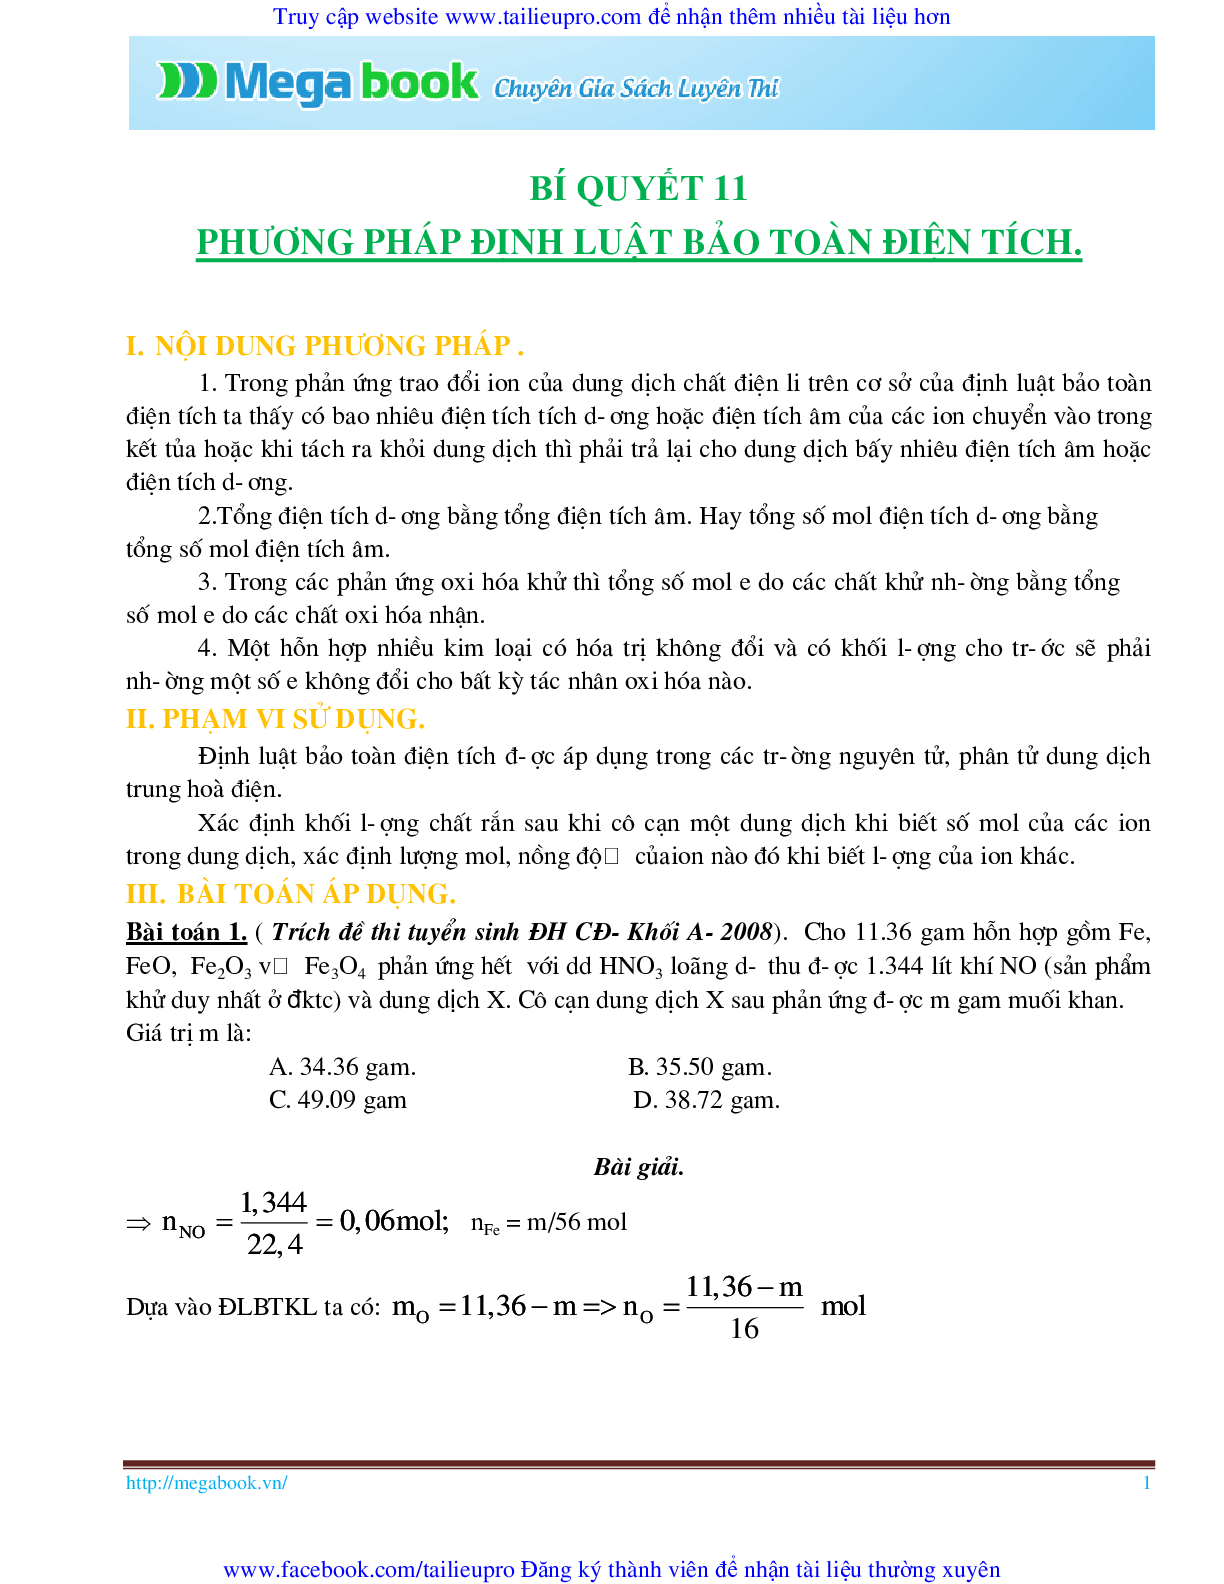 10 Bí quyết chinh phục phương pháp giải toán chủ chốt môn Hóa học ôn thi THPT Quốc Gia (trang 1)